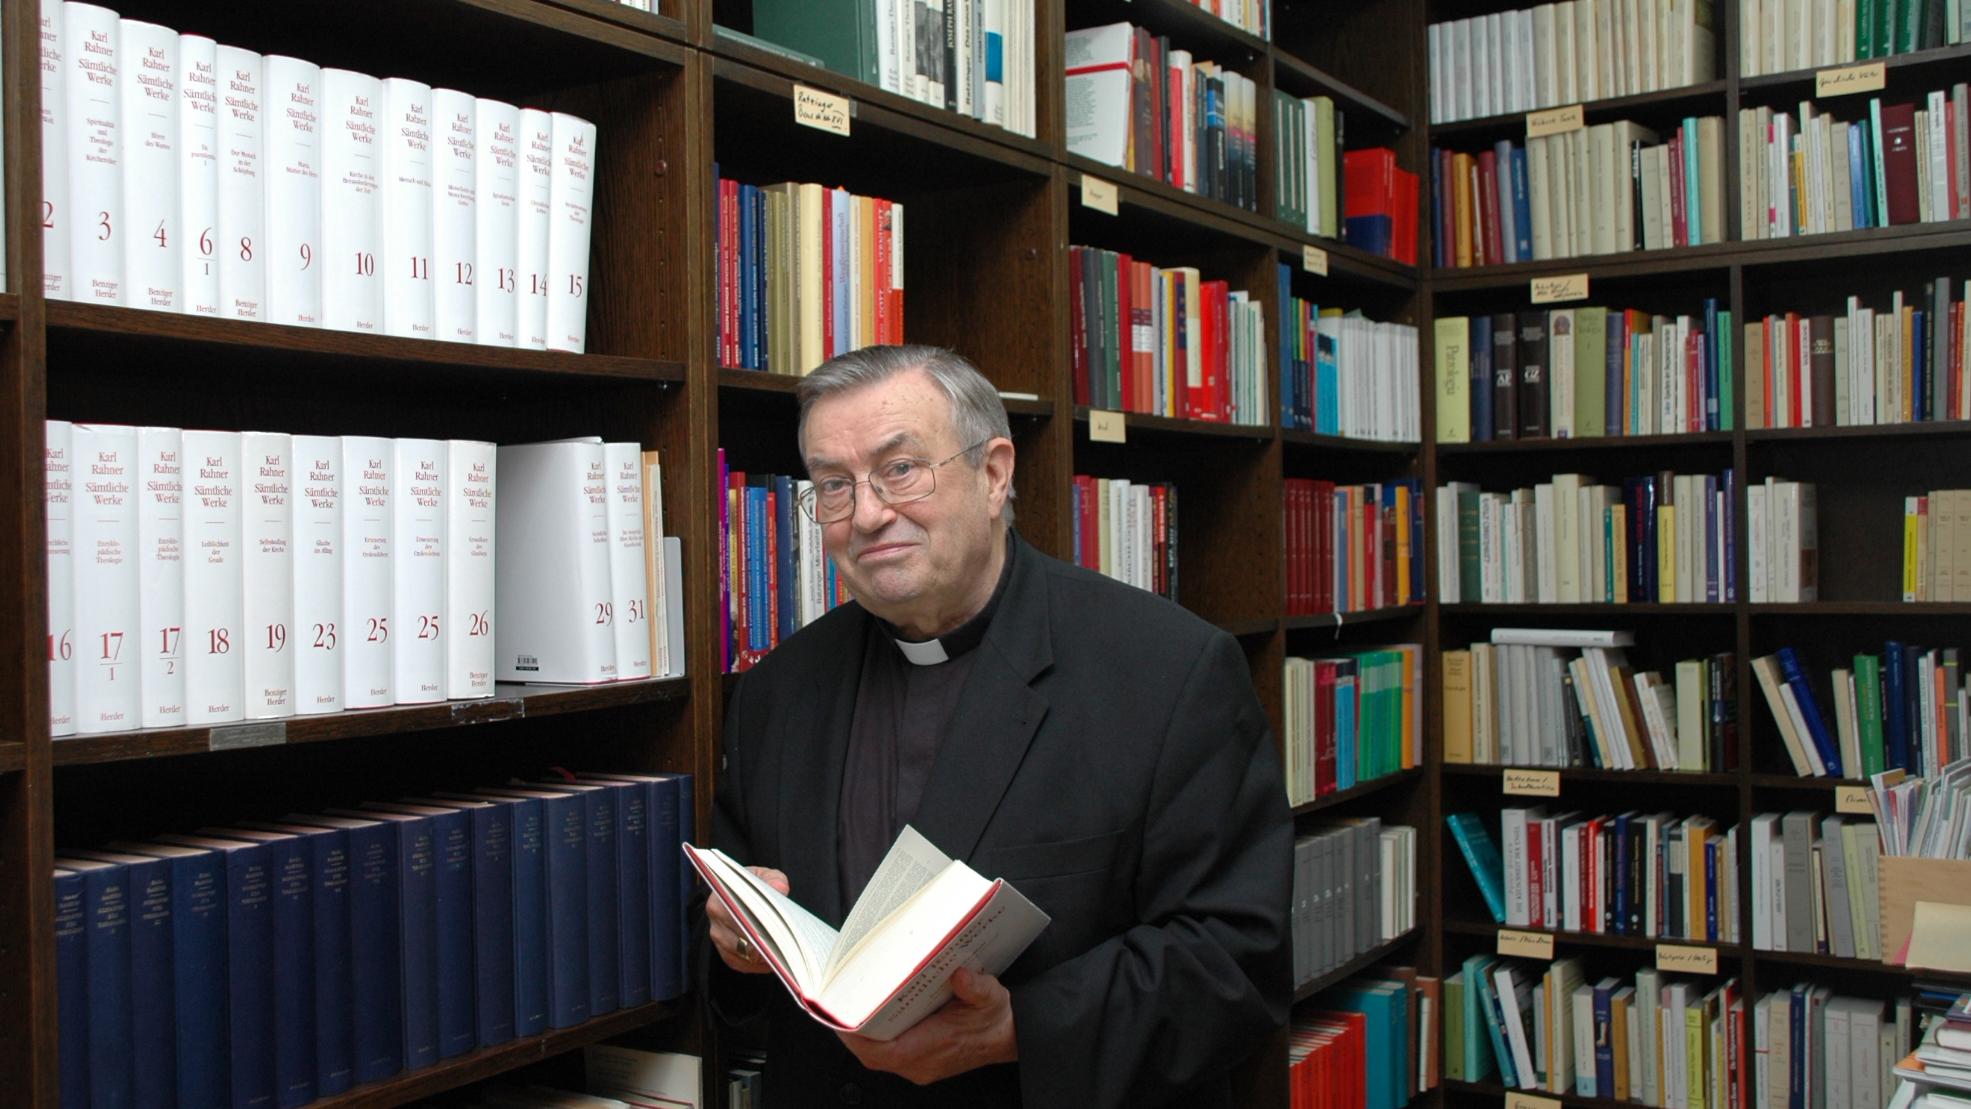 Kardinal Karl Lehmann in seiner Bibliothek im Mainzer Bischofshaus. Das Bild stammt aus dem Jahr 2008.